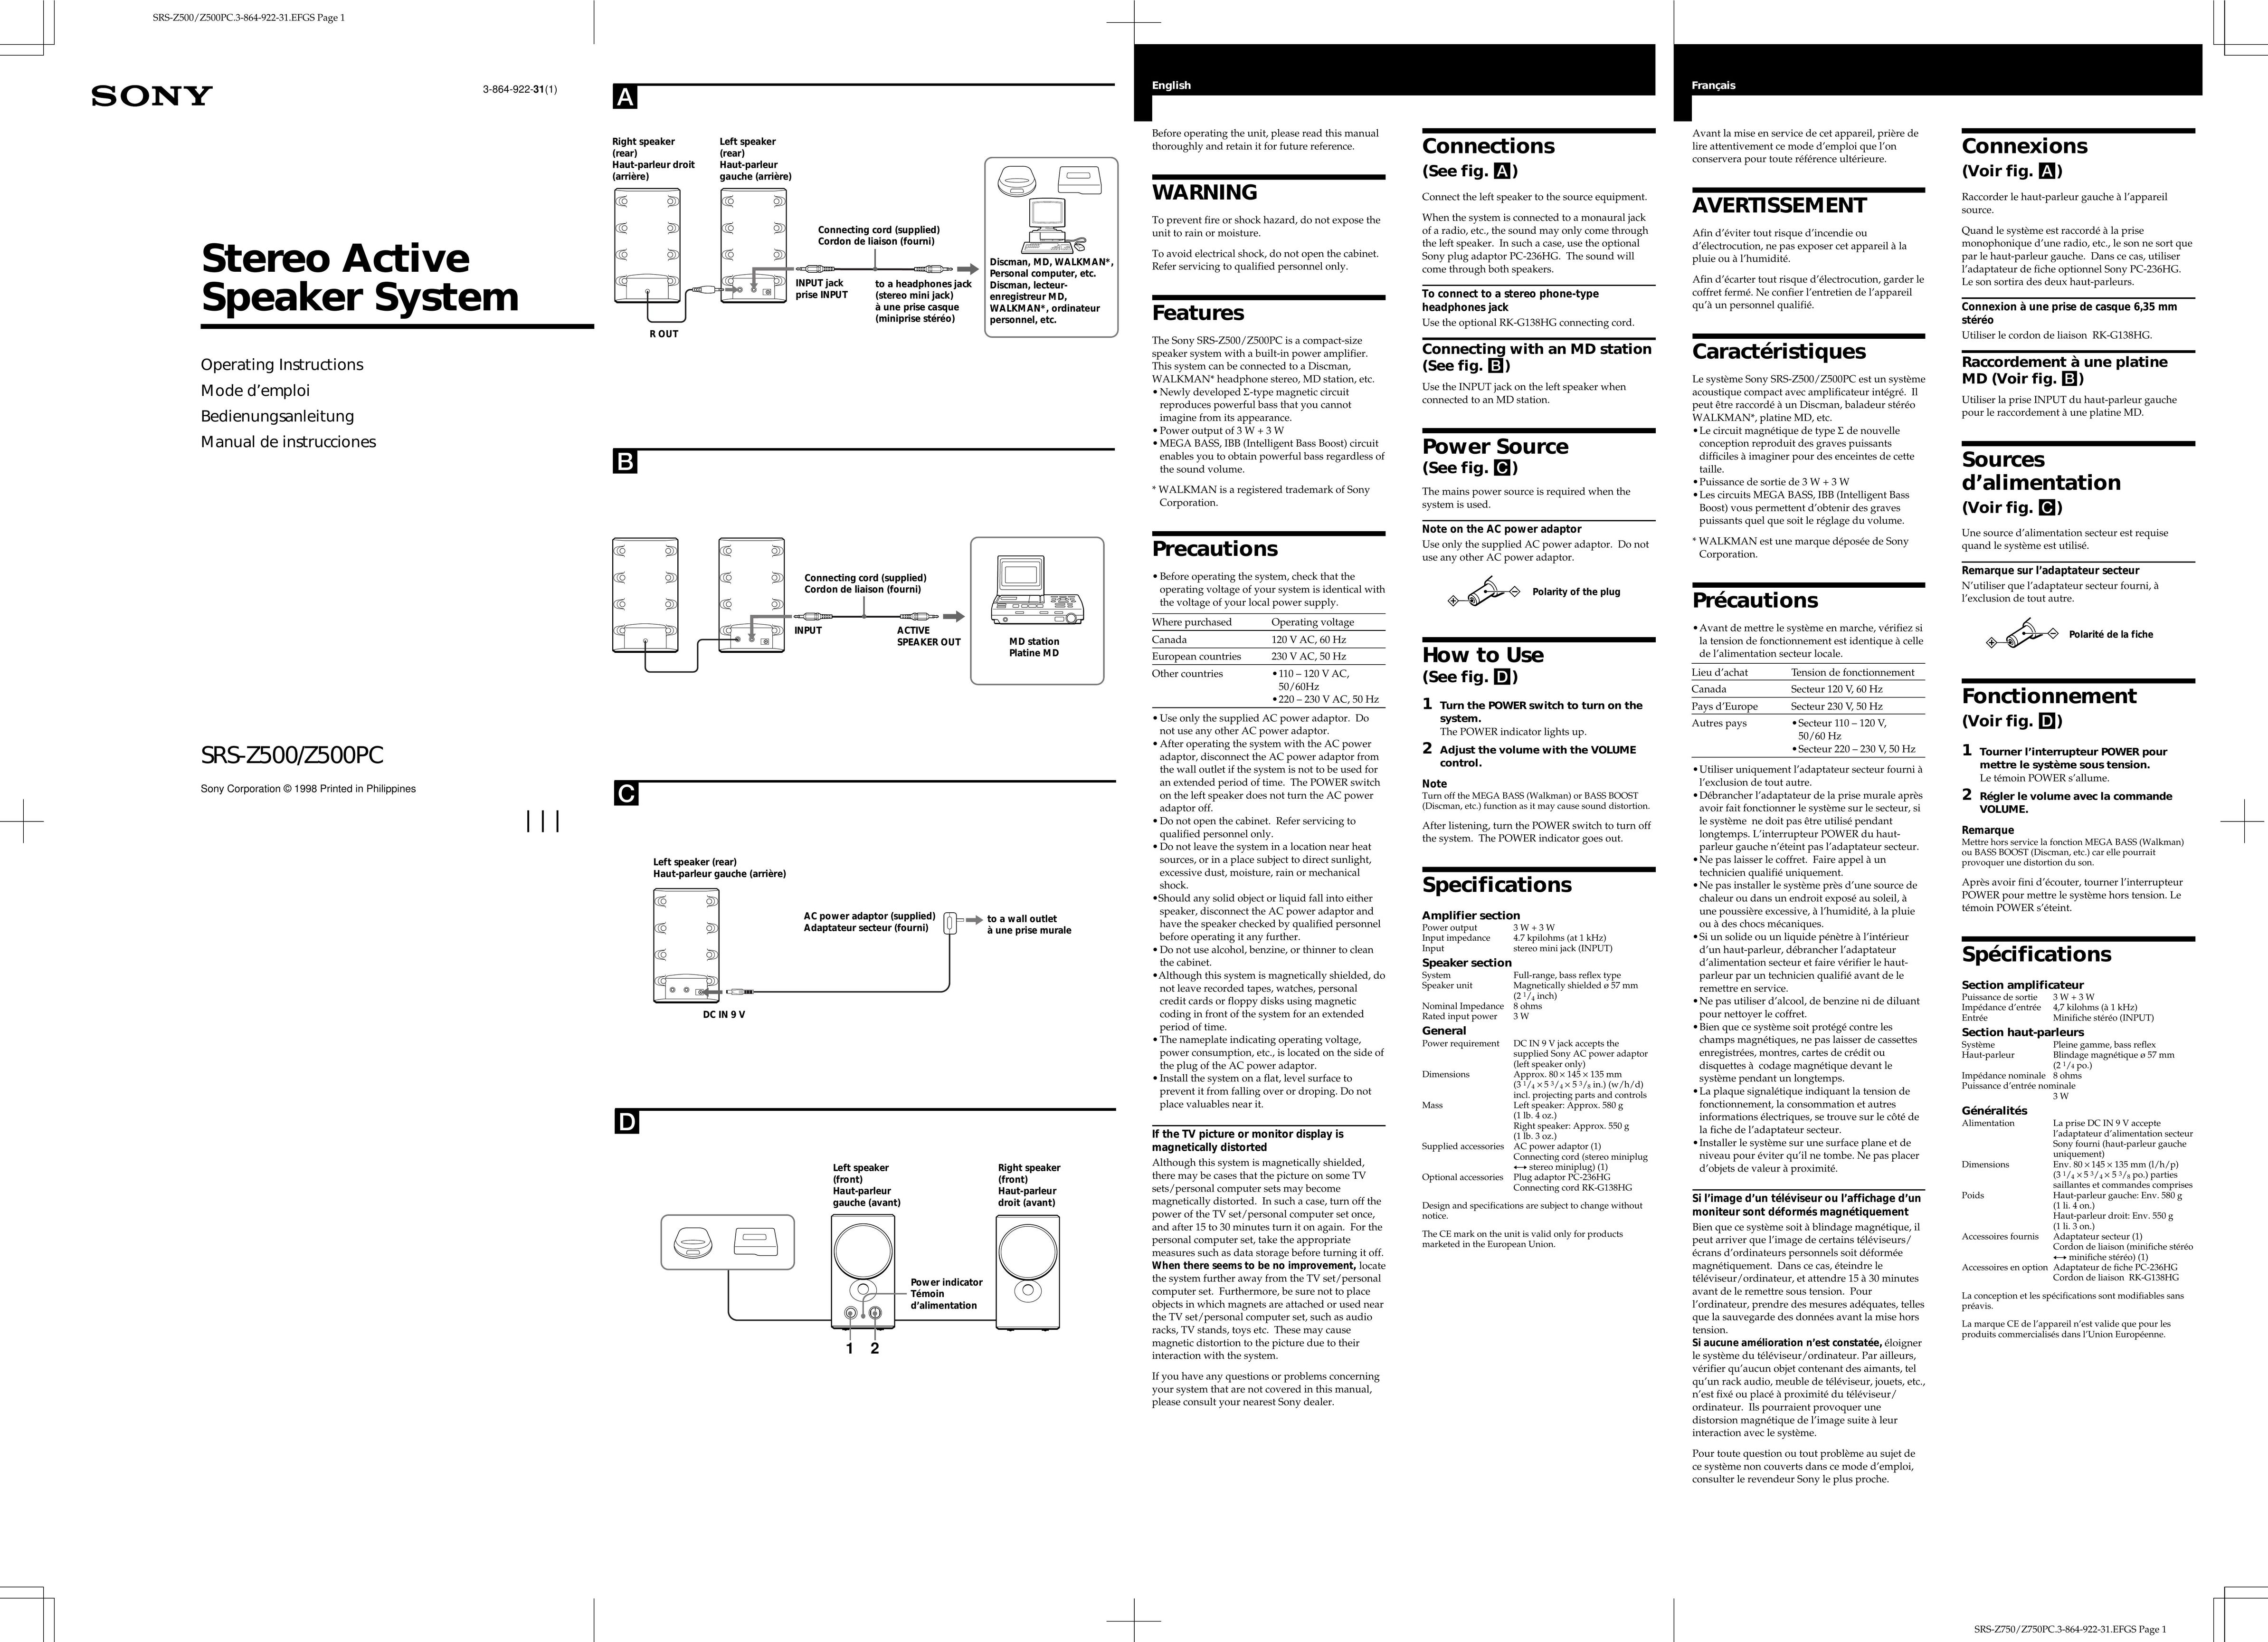 Sony SRS-Z500/Z500PC Portable Speaker User Manual